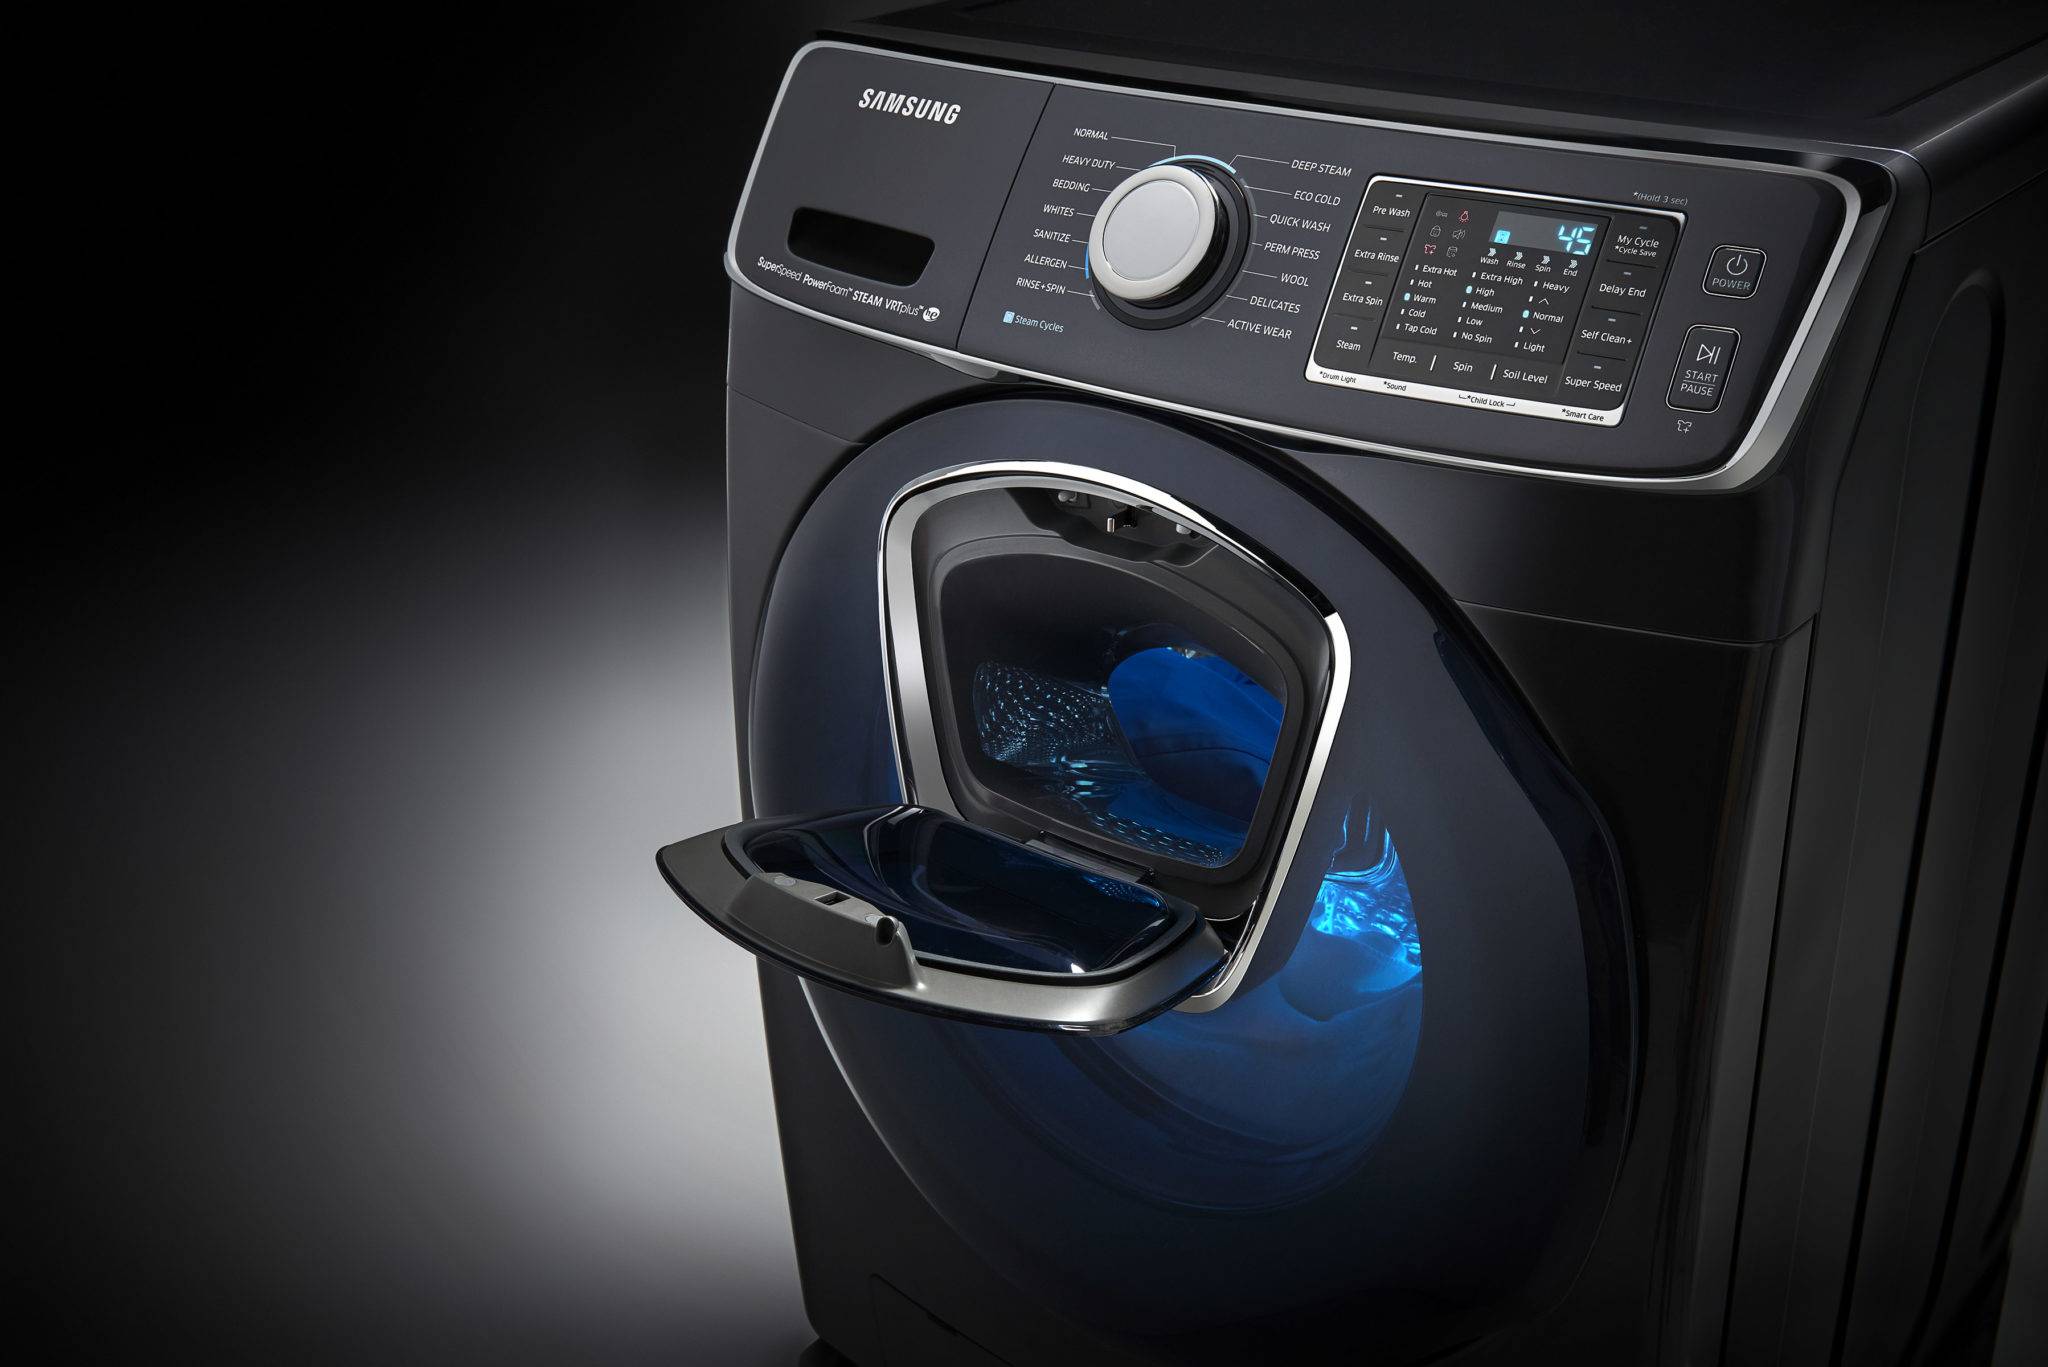 Обзор стиральных машин самсунг